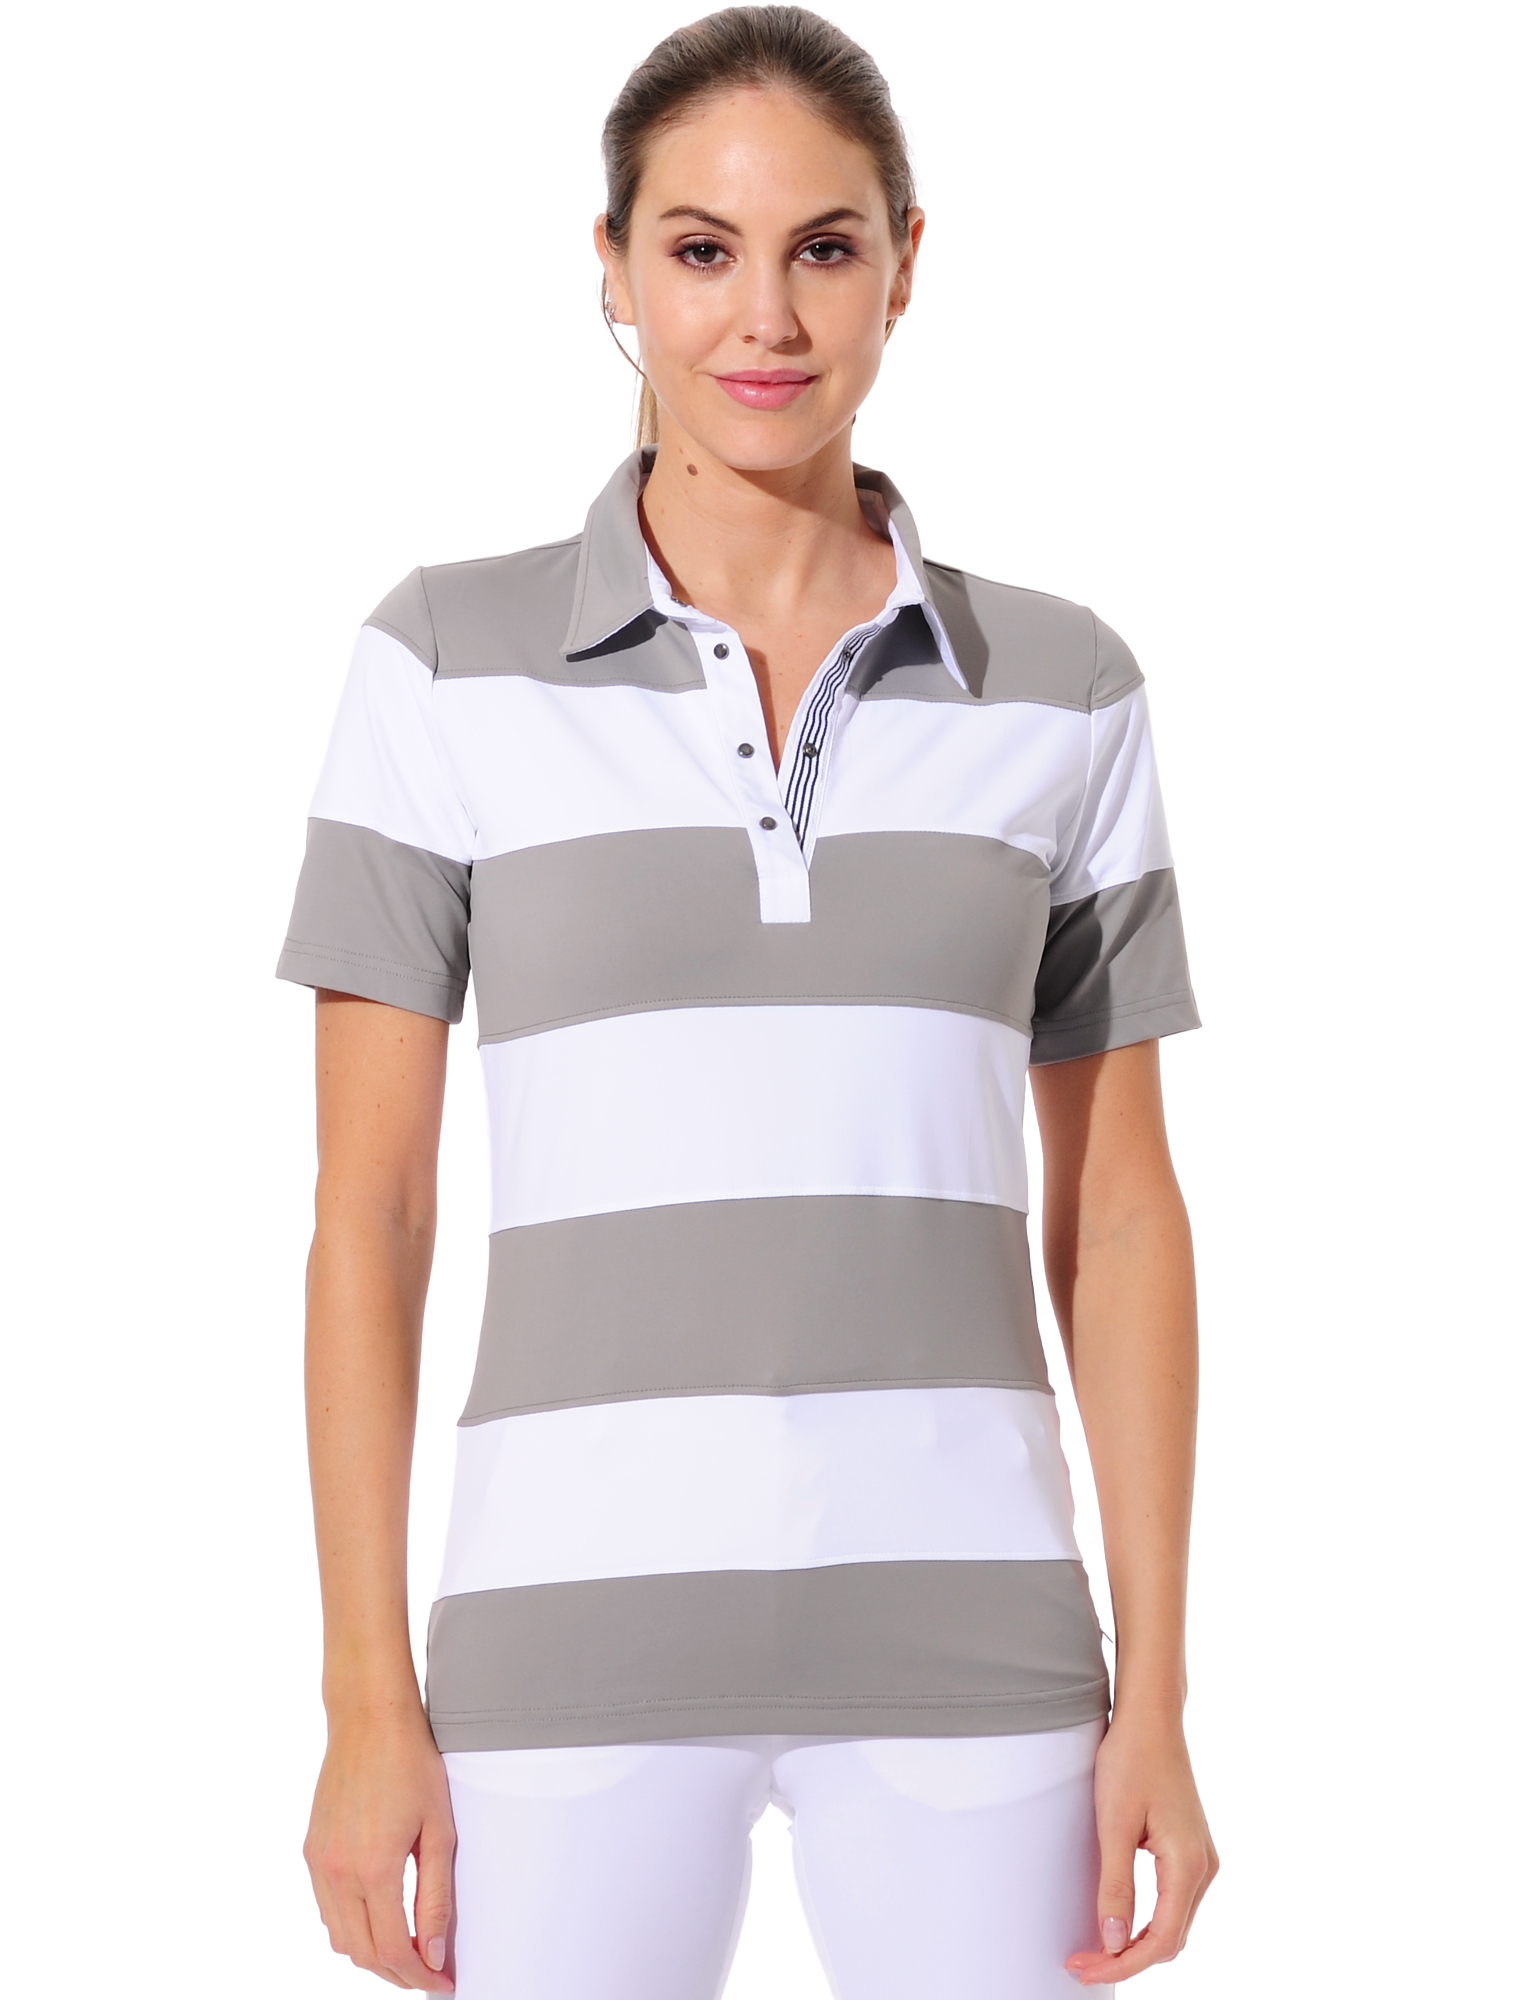 Meryl Golf Poloshirt grey/white